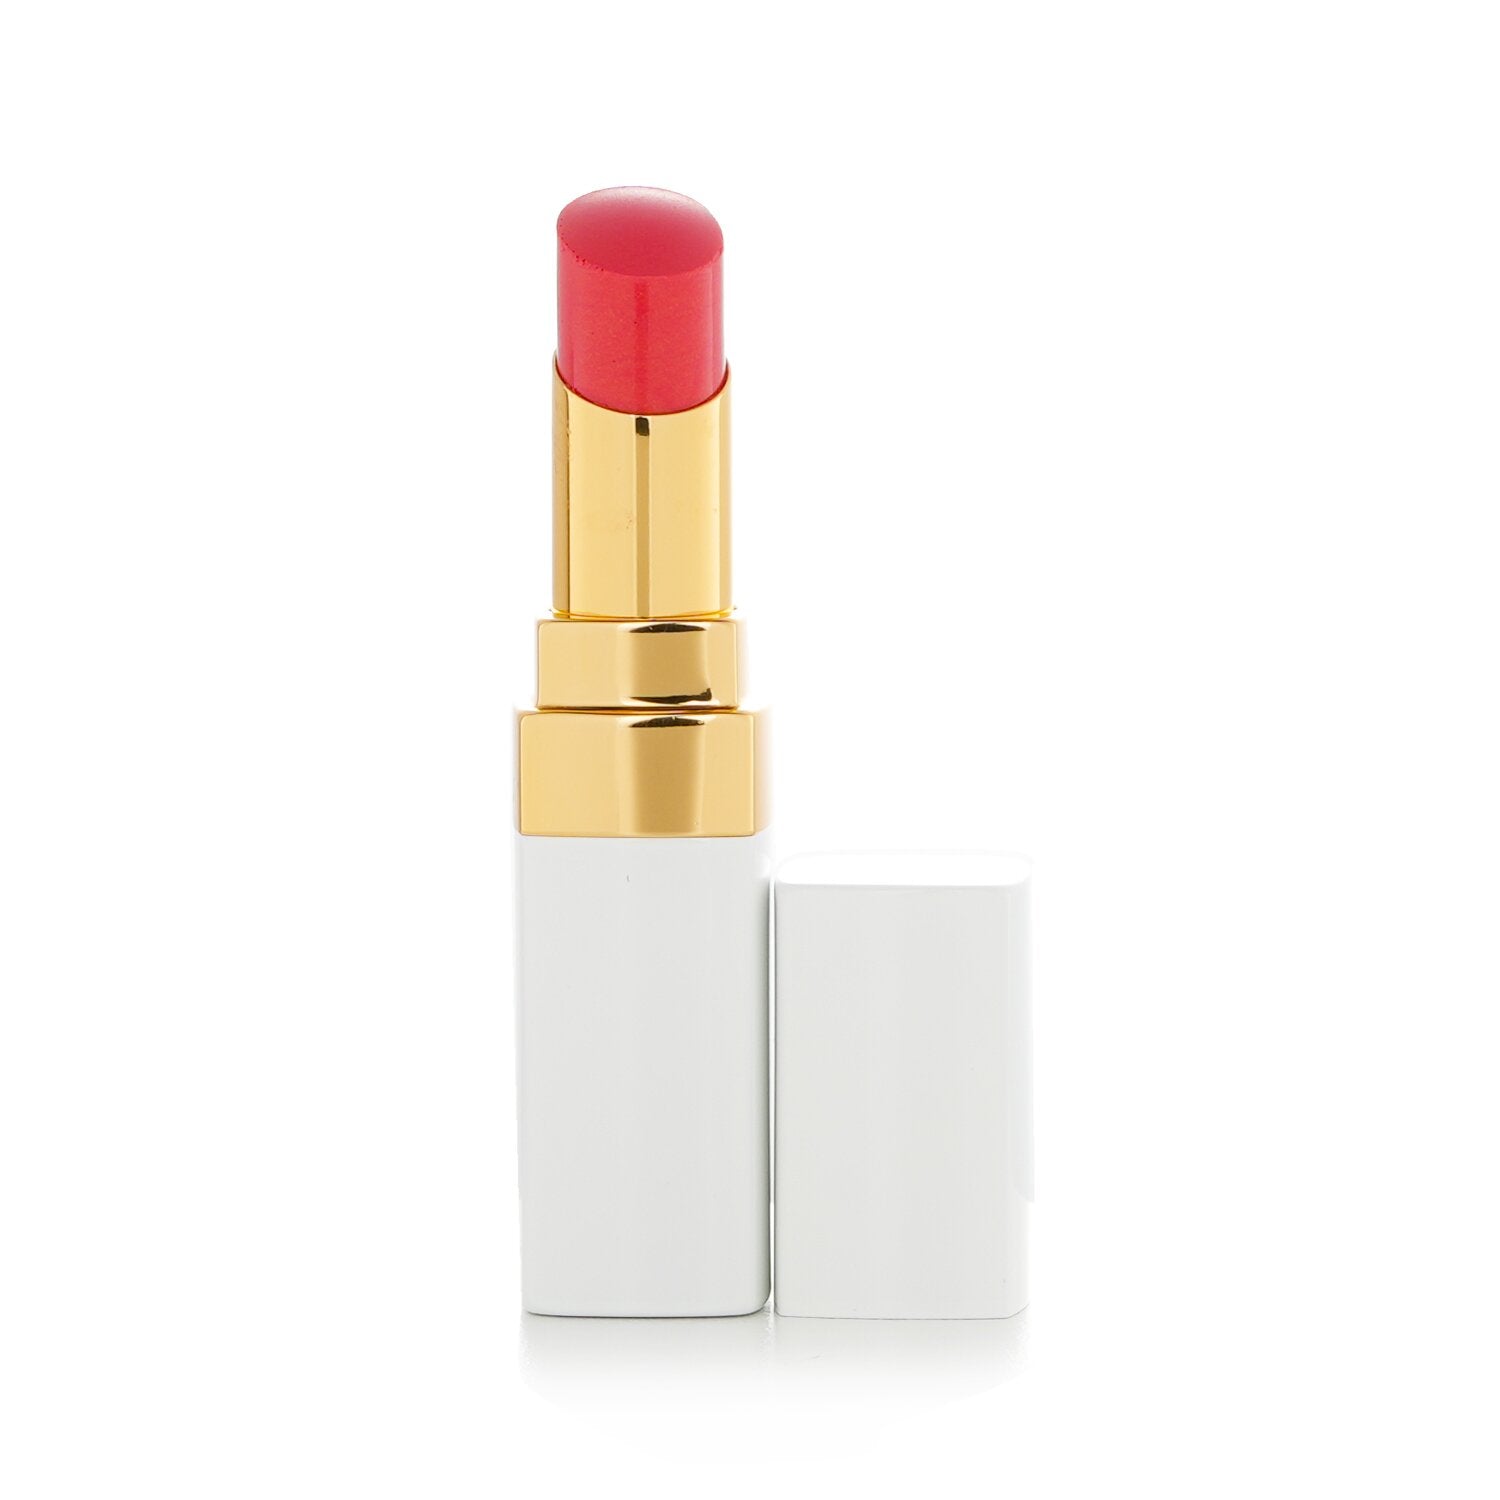 Chanel Rouge Coco Lipstick, Dimitri 442 - 0.12 oz tube